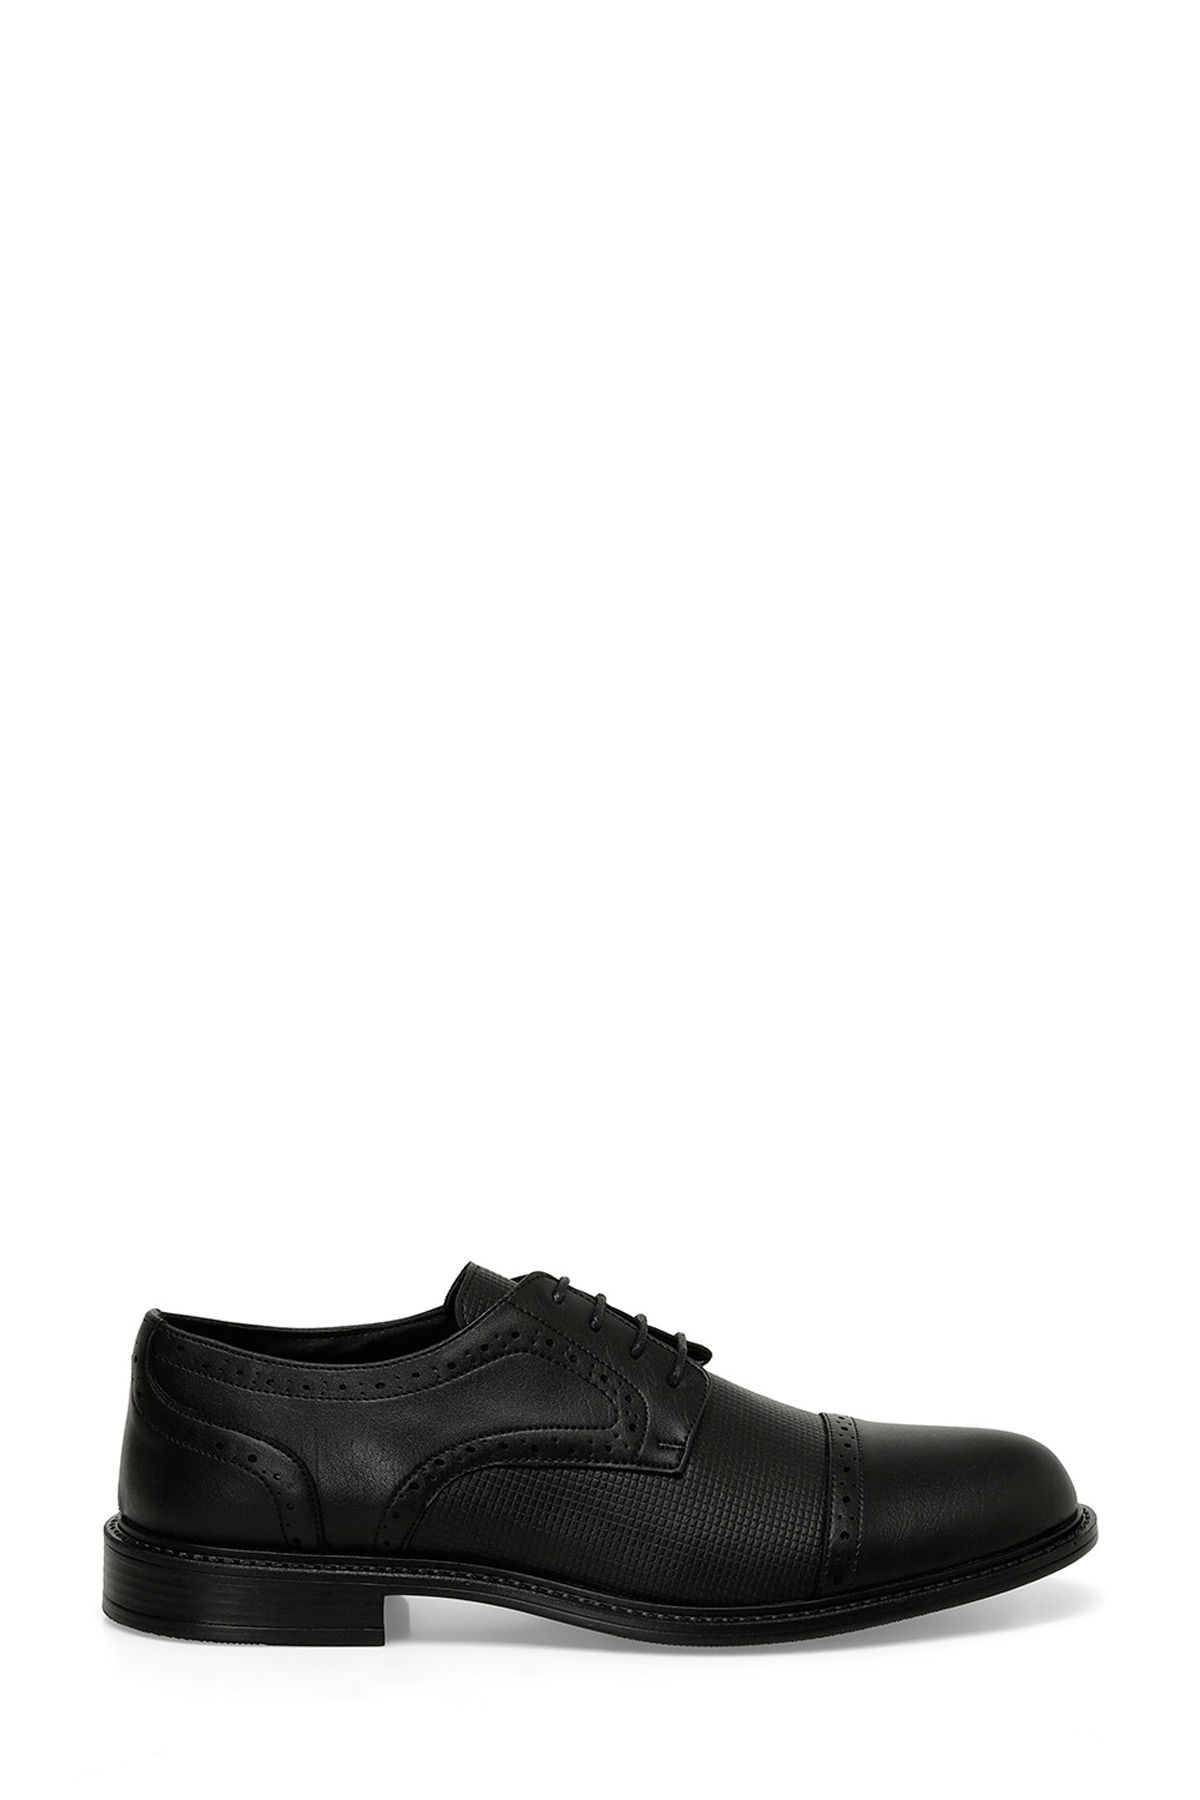 Downtown MERIT 4FX Siyah Erkek Klasik Ayakkabı